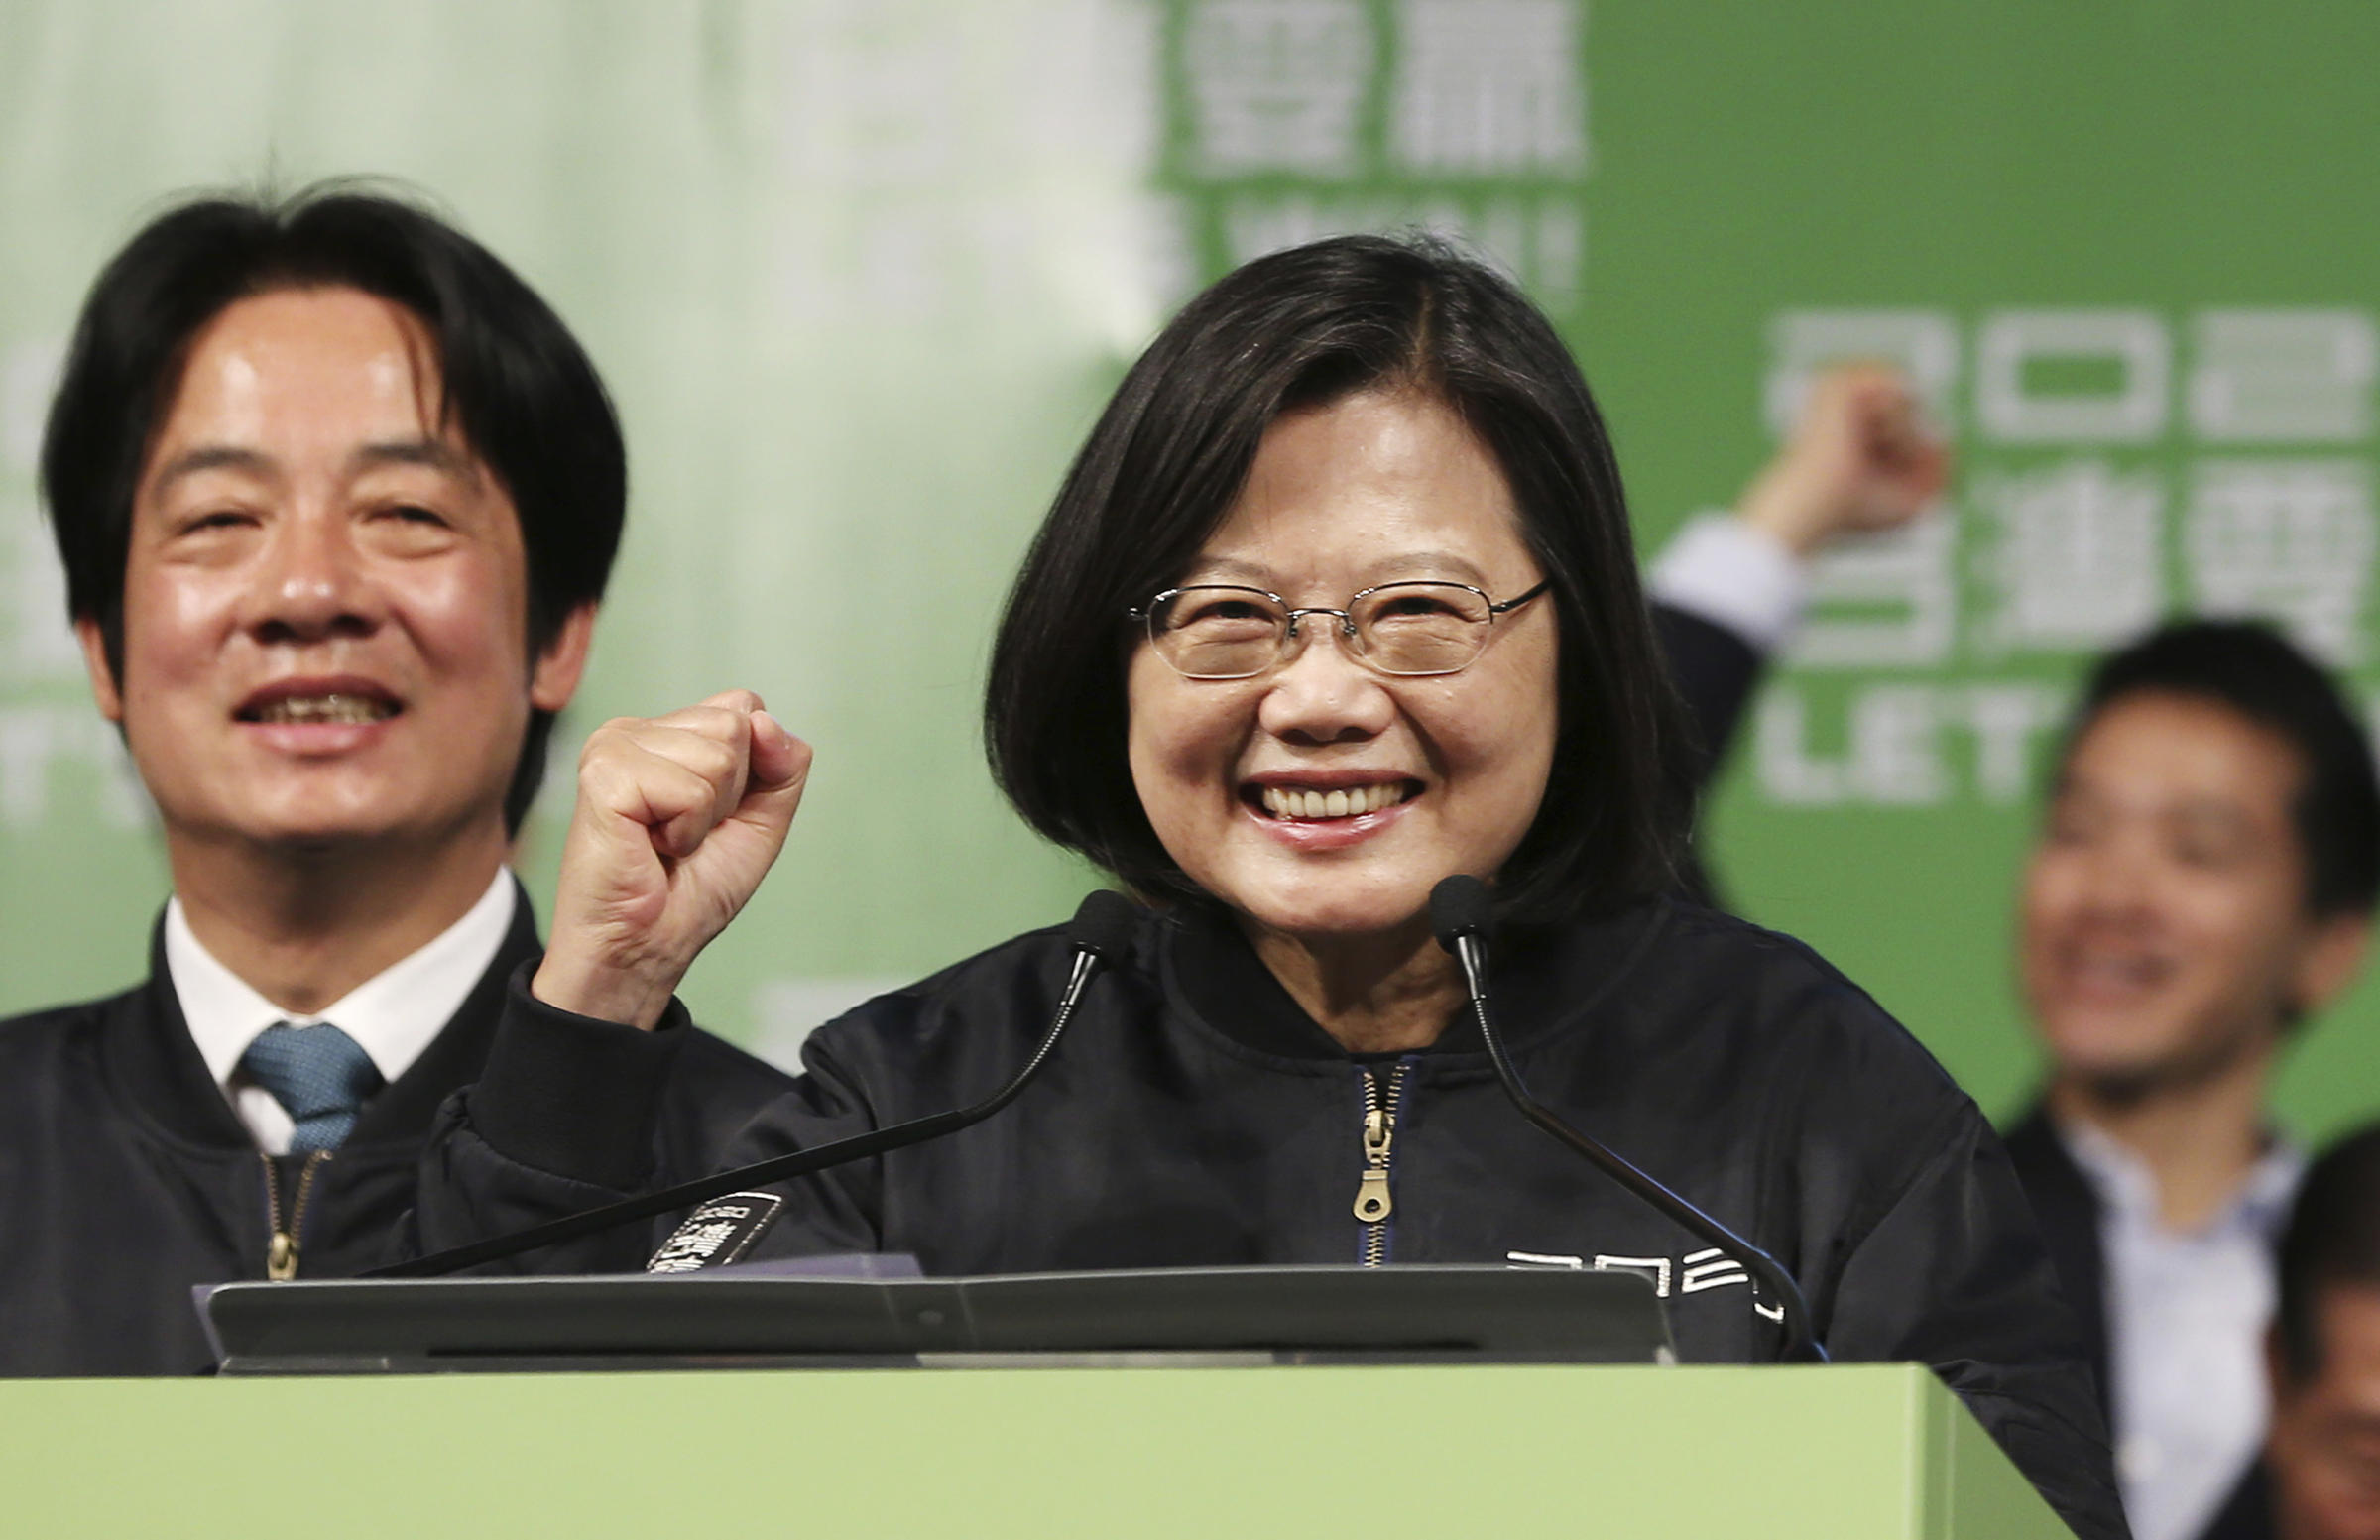 La présidente taïwanaise sortante Tsai Ing-wen a été réélue avec 57 % des voix le 11 janvier 2019. (Source : Hawai Public Radio)